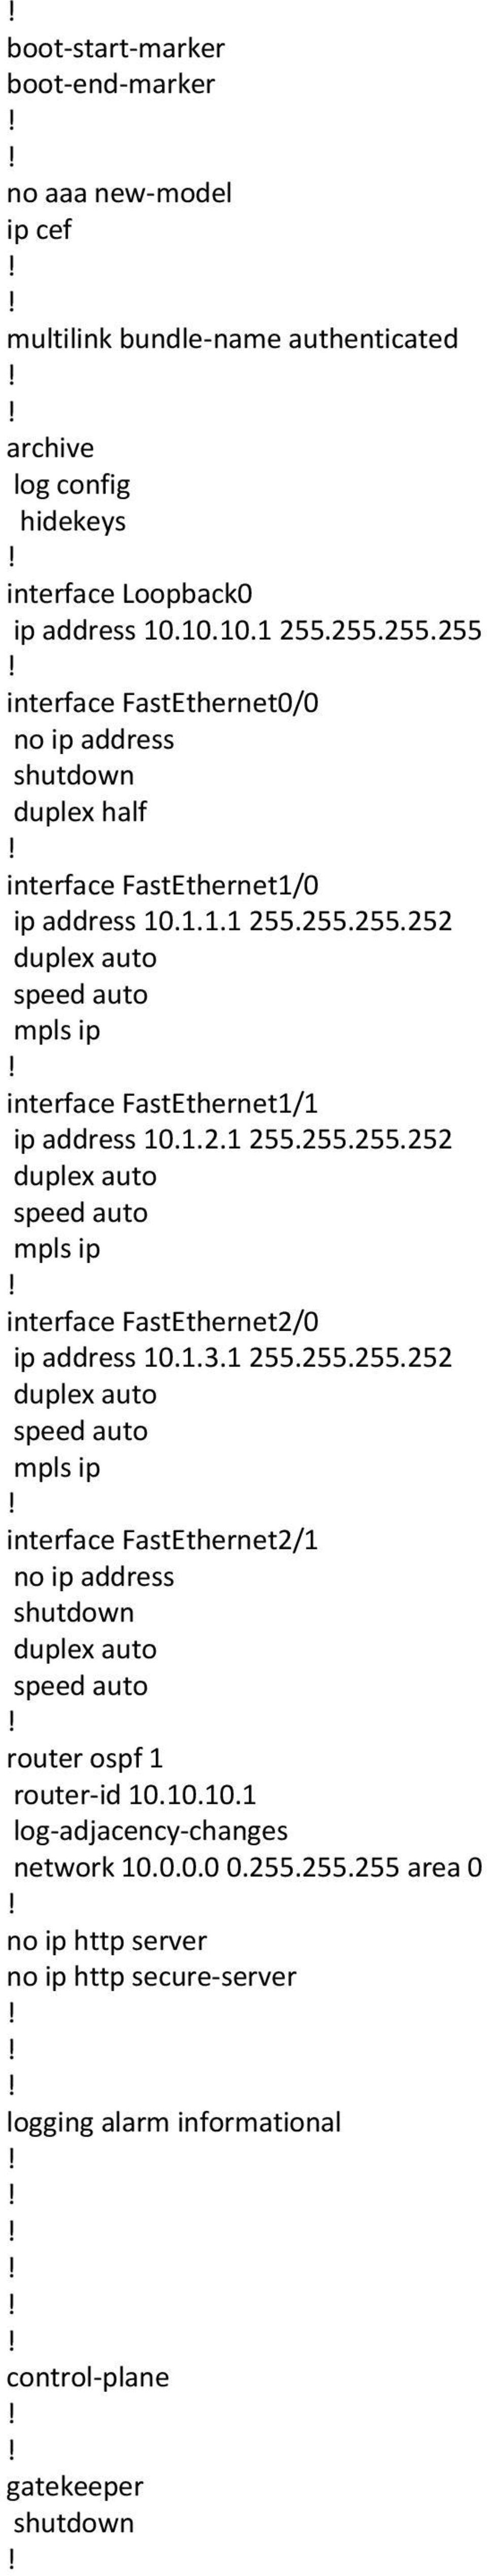 1.2.1 255.255.255.252 mpls ip interface FastEthernet2/0 ip address 10.1.3.1 255.255.255.252 mpls ip interface FastEthernet2/1 router ospf 1 router-id 10.10.10.1 log-adjacency-changes network 10.